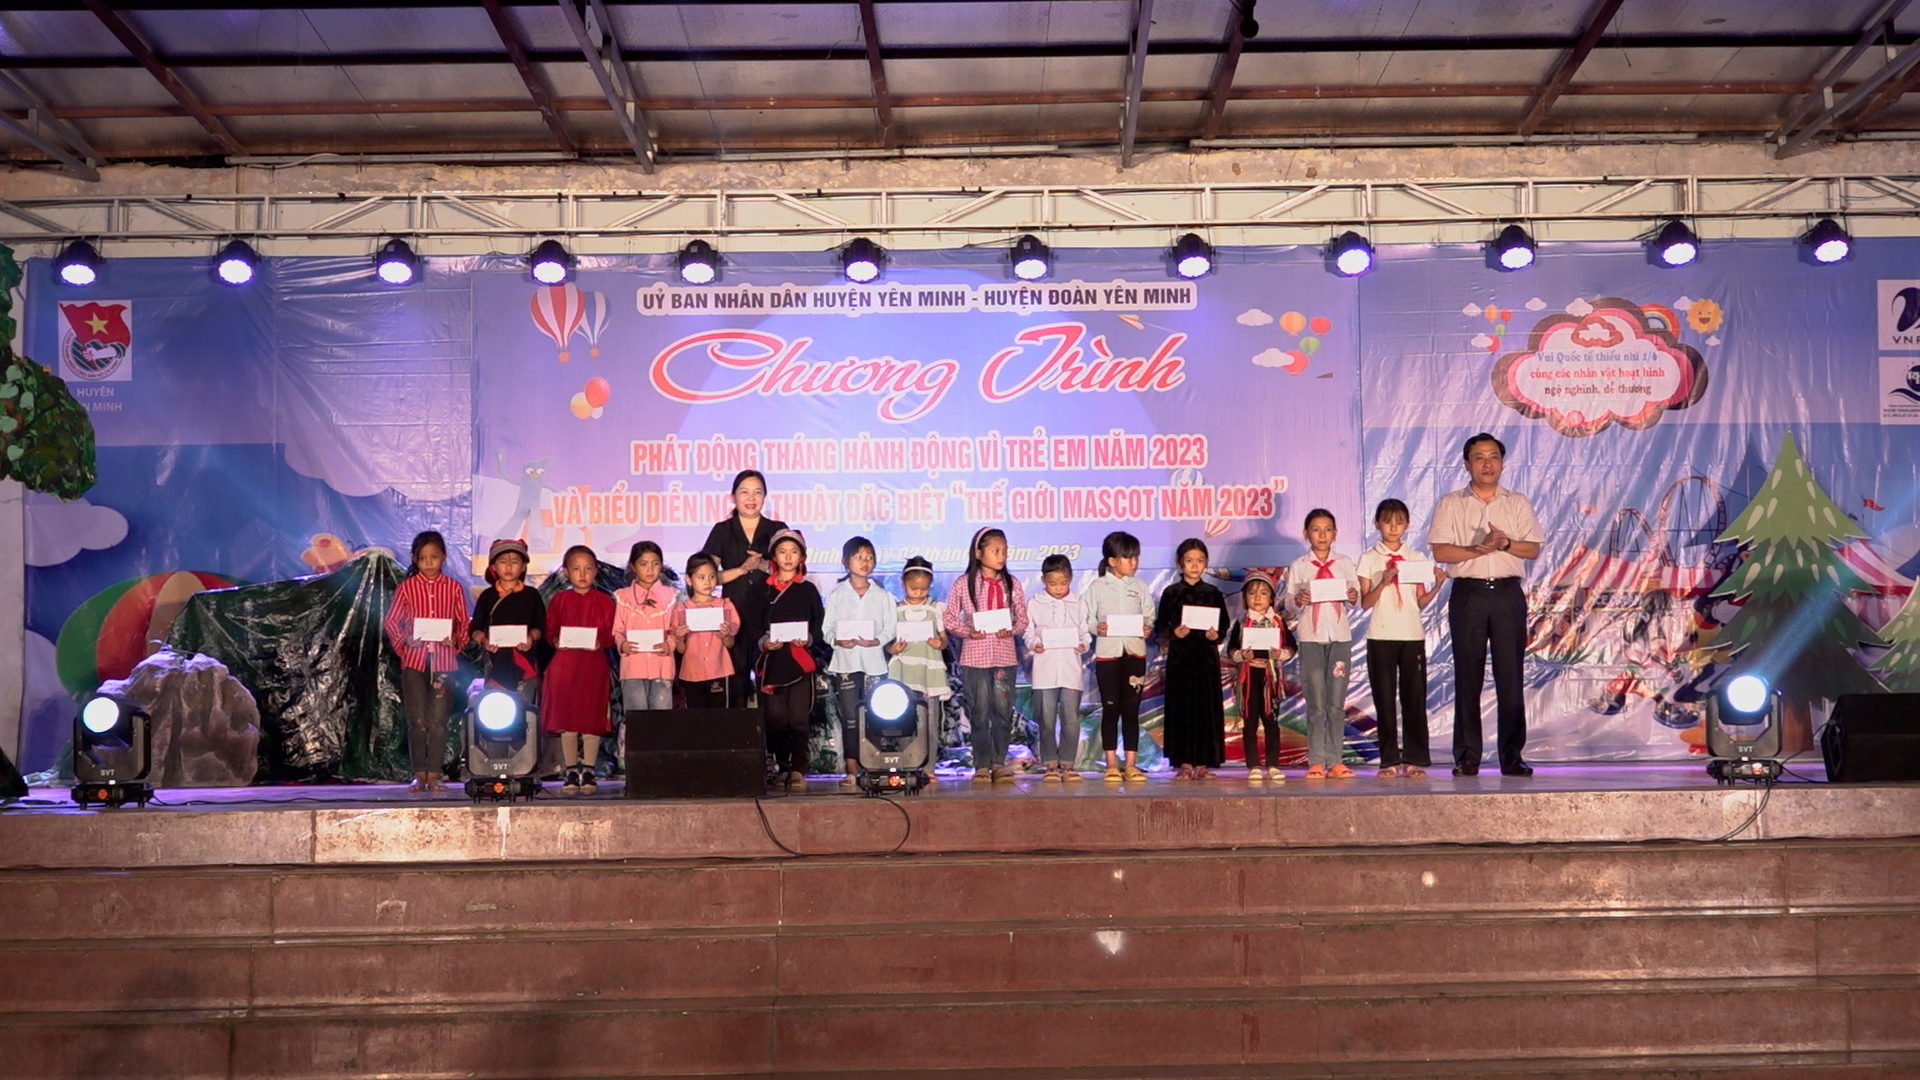 Yên Minh tổ chức phát động tháng hành động vì trẻ em và biểu diễn nghệ thuật 